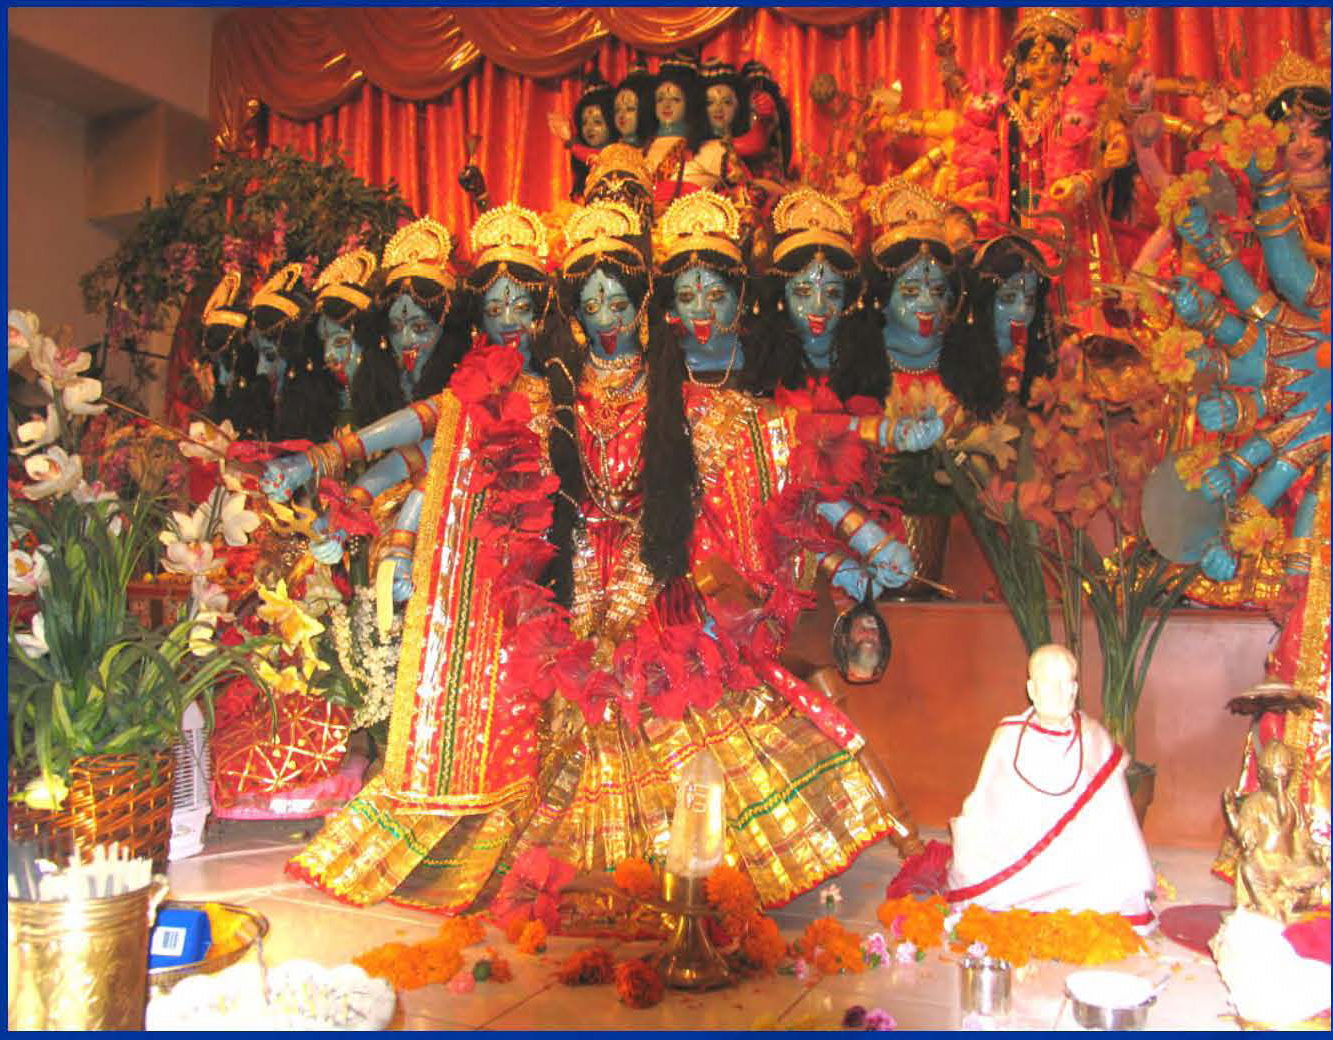 Maha Kali with ten faces